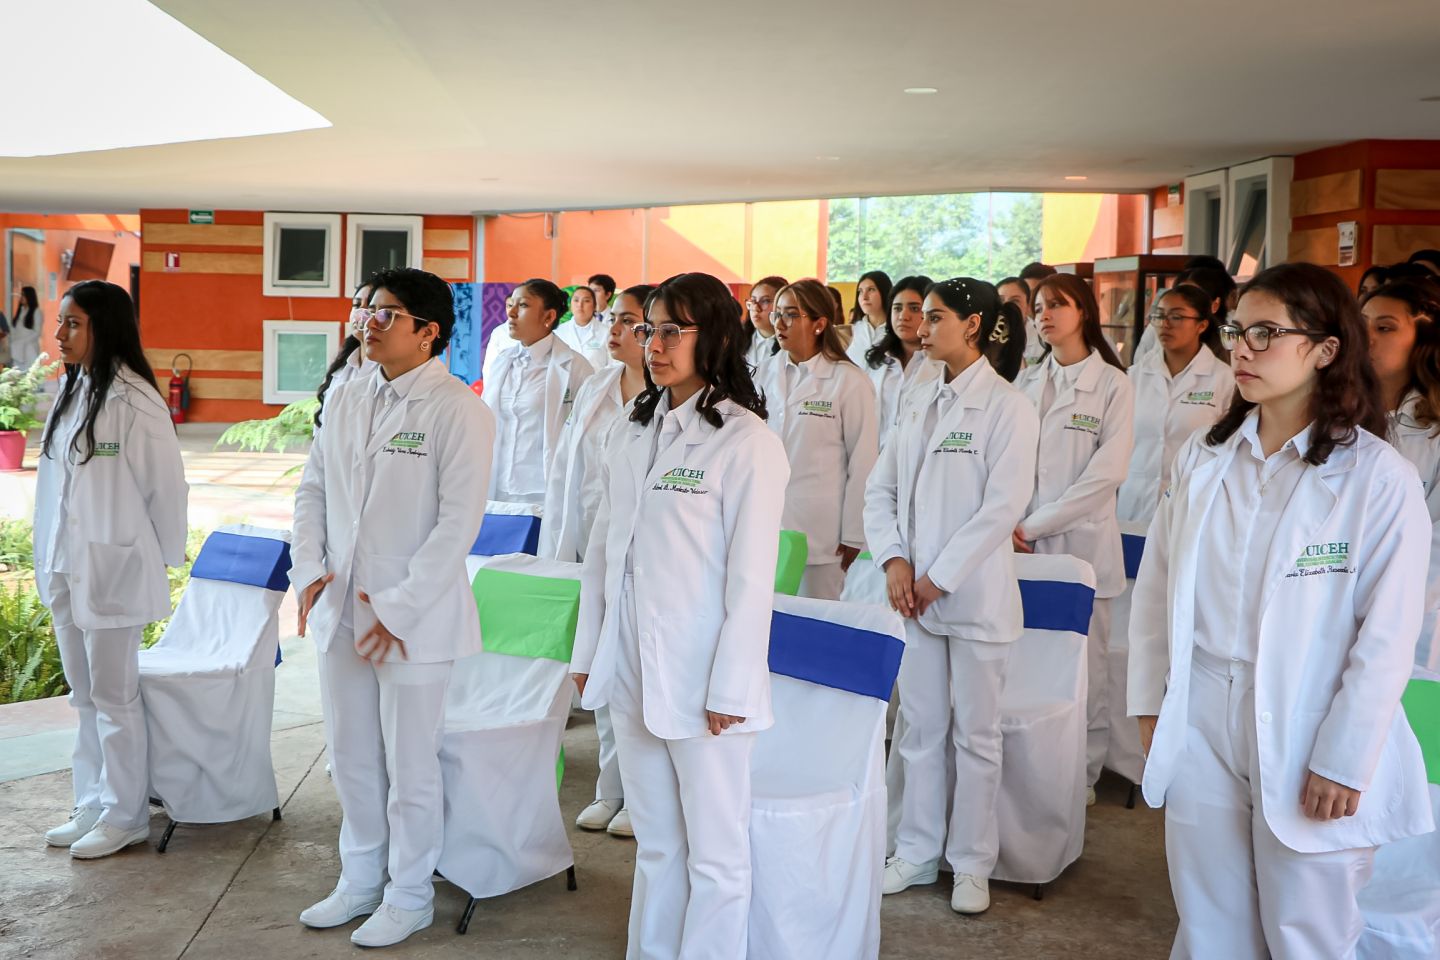 Futuros médicos de la UICEH inician
prácticas en la Otomí-Tepehua